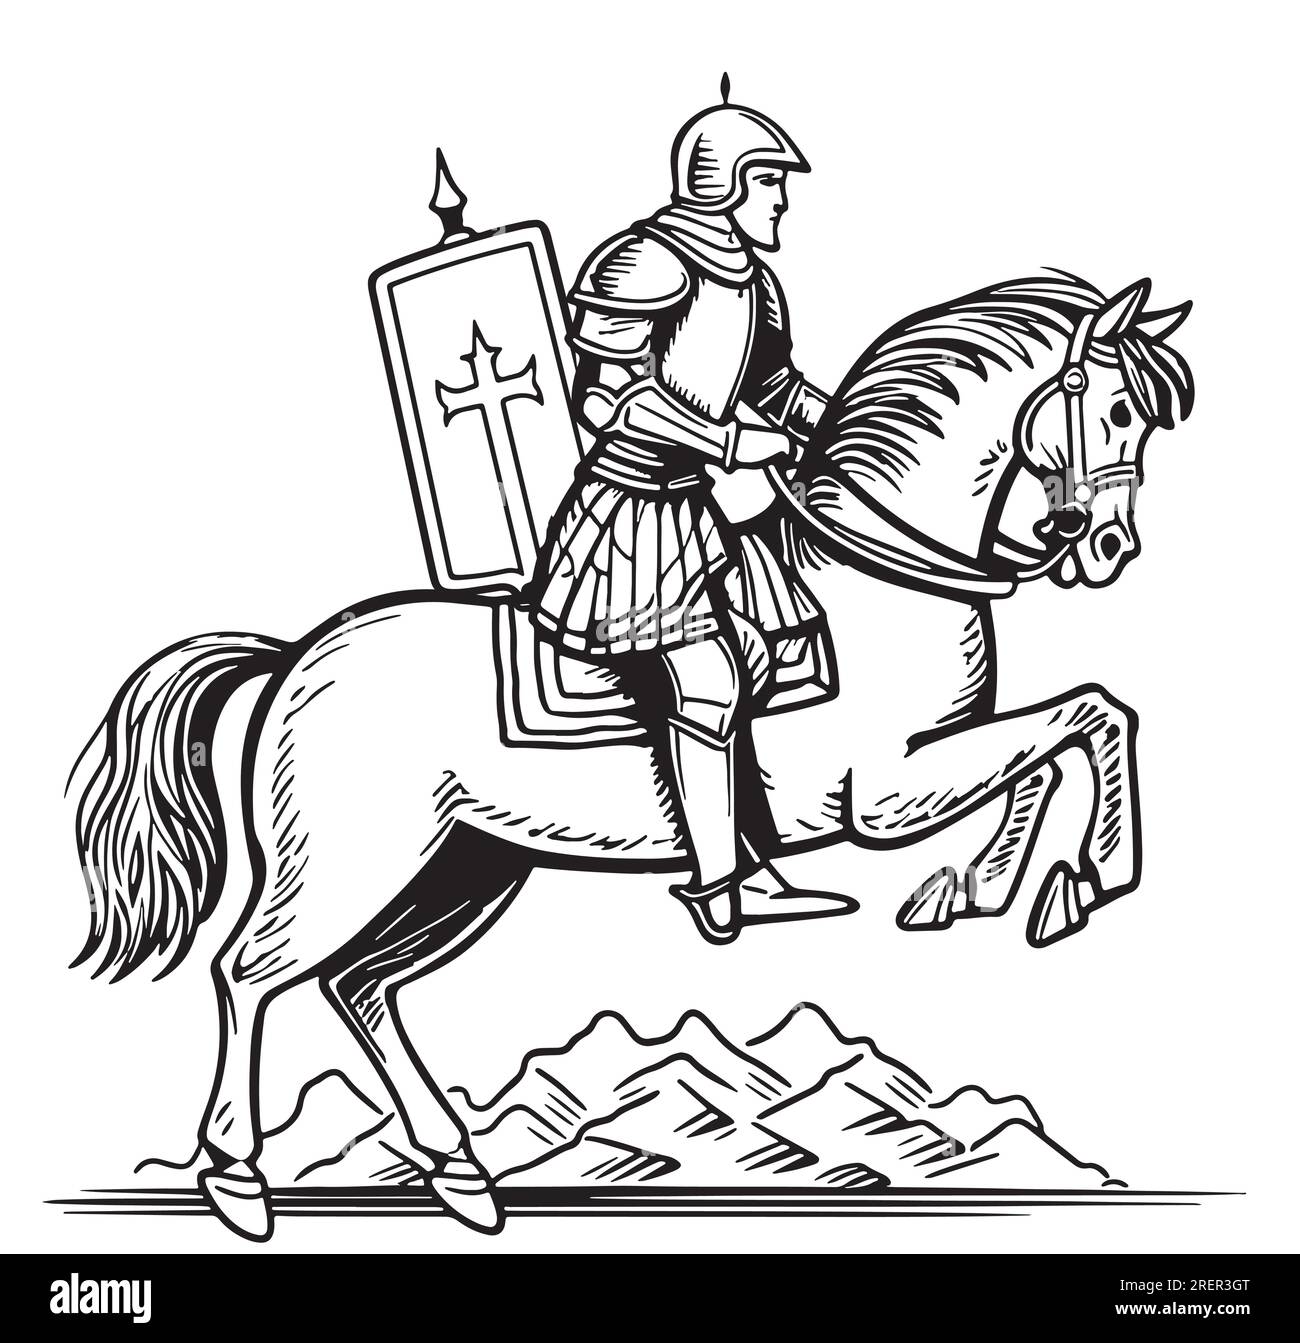 Knight on horseback sketch hand drawn heraldry illustration Stock Vector